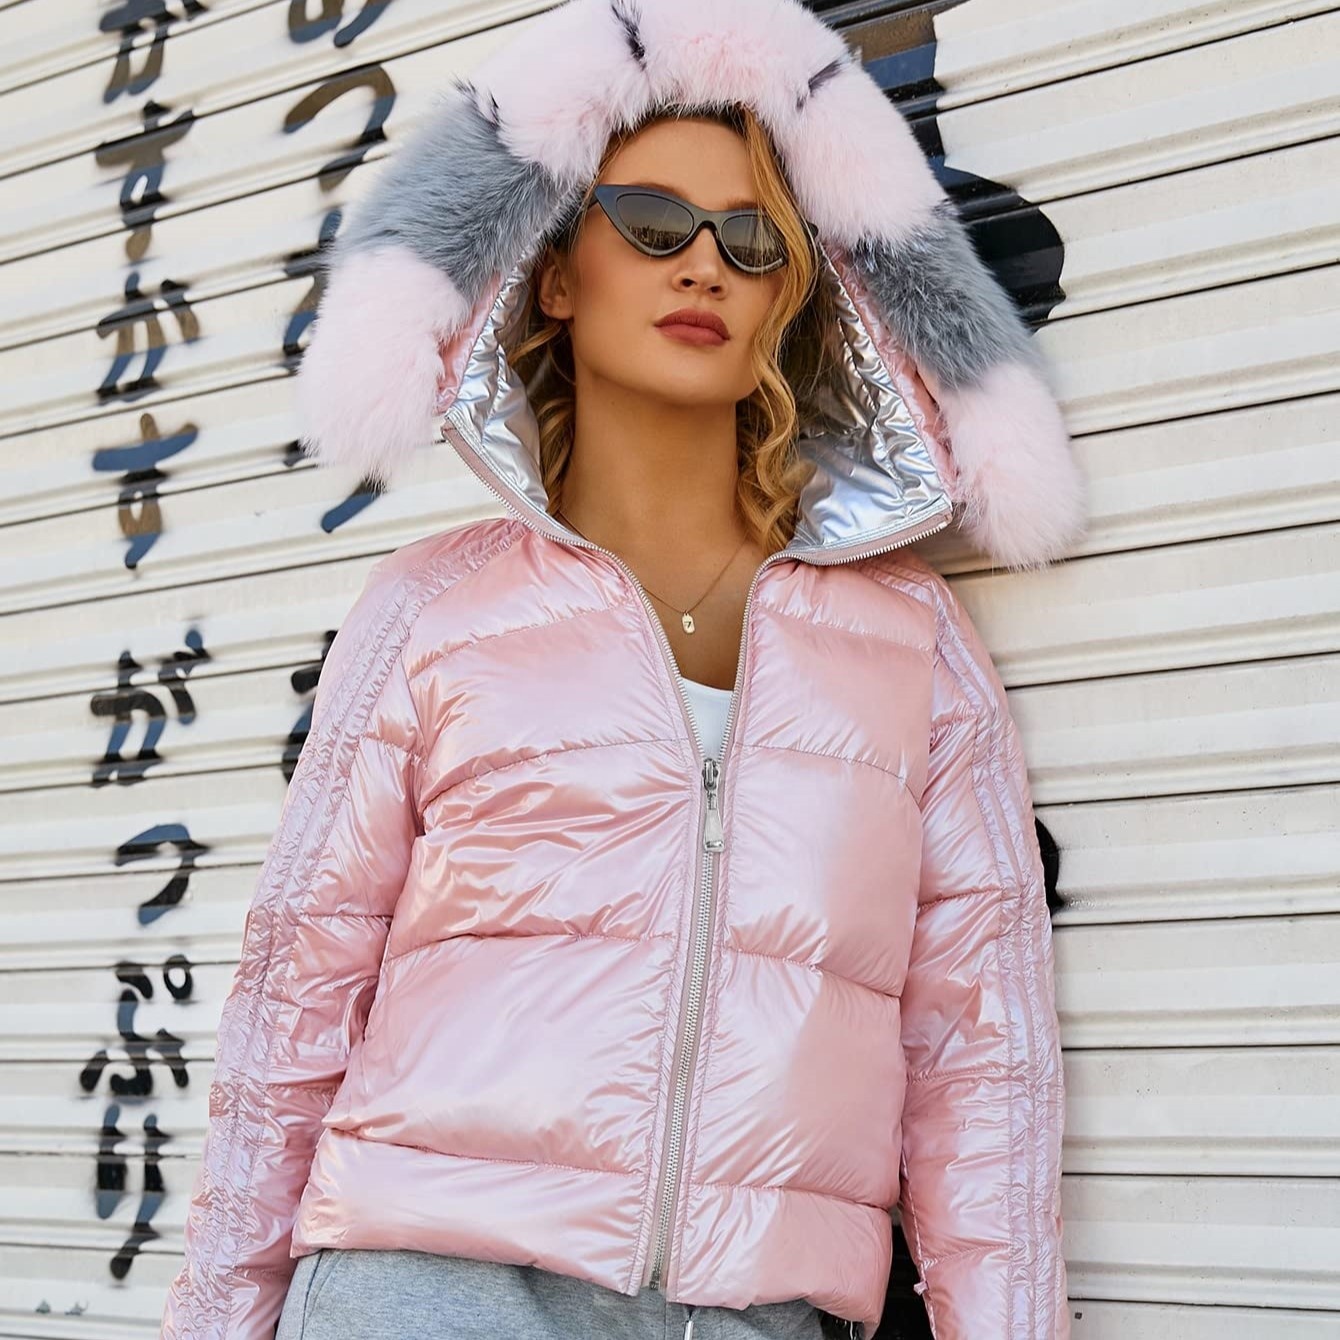 HG7461 venden al por mayor los abrigos de las mujeres de encargo de la piel de Fox de la chaqueta de la cremallera con capucha de las mujeres del invierno abajo Outwear